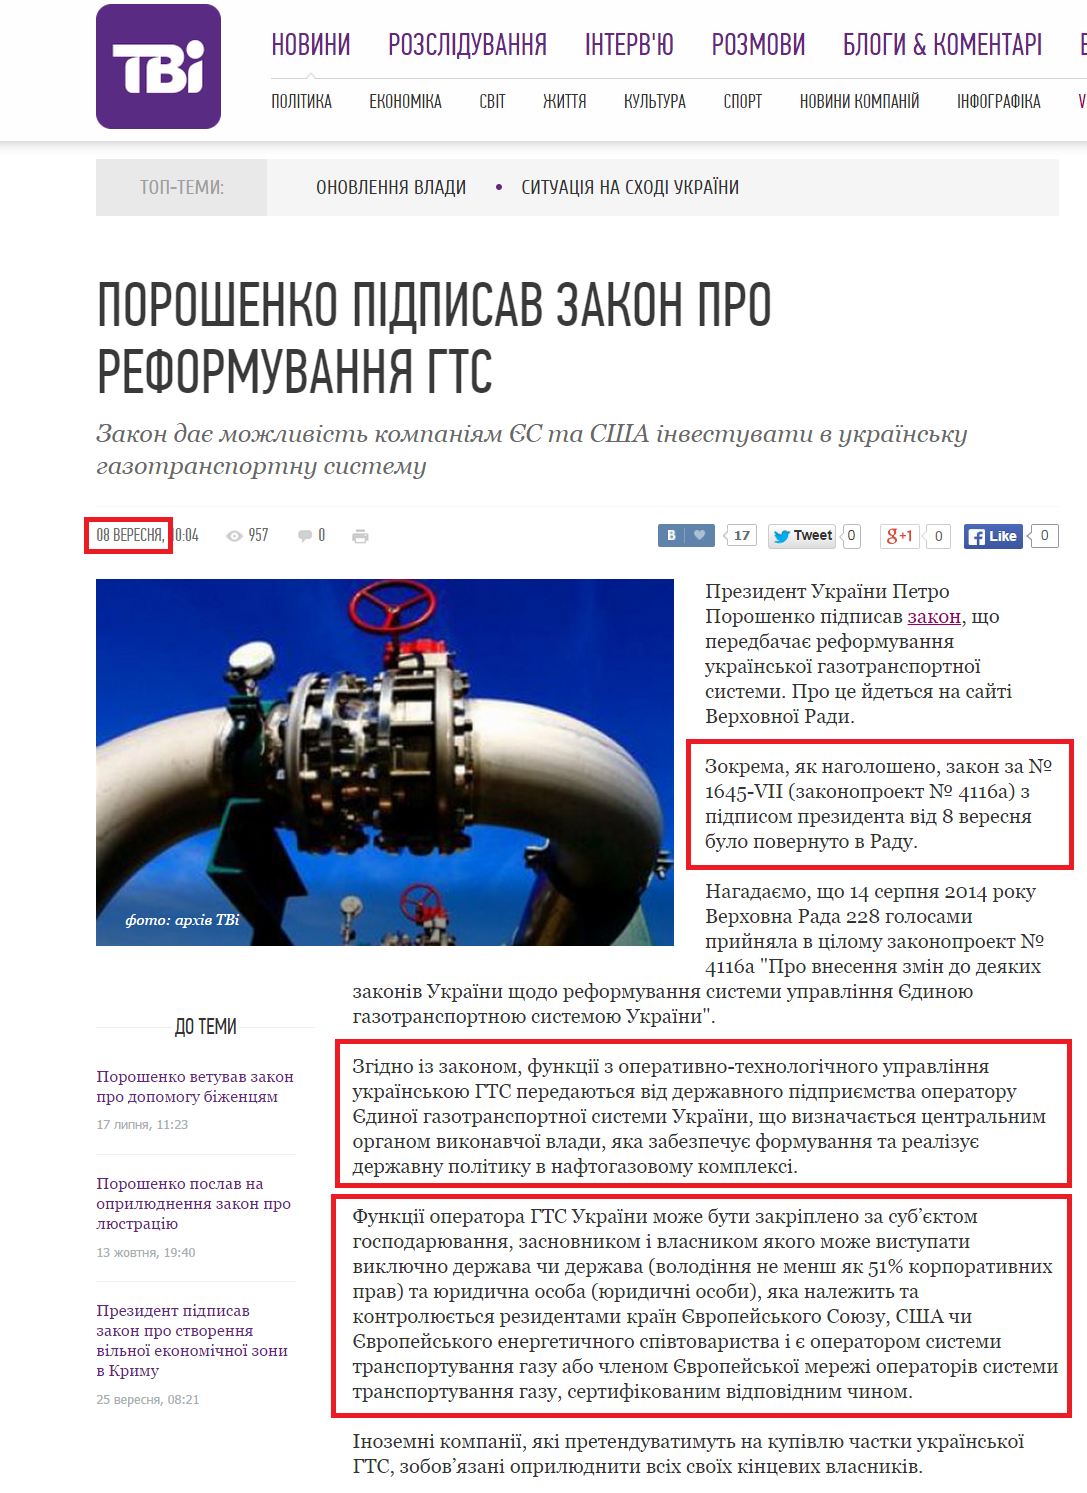 http://tvi.ua/new/2014/09/08/poroshenko_pidpysav_zakon_pro_reformuvannya_hts